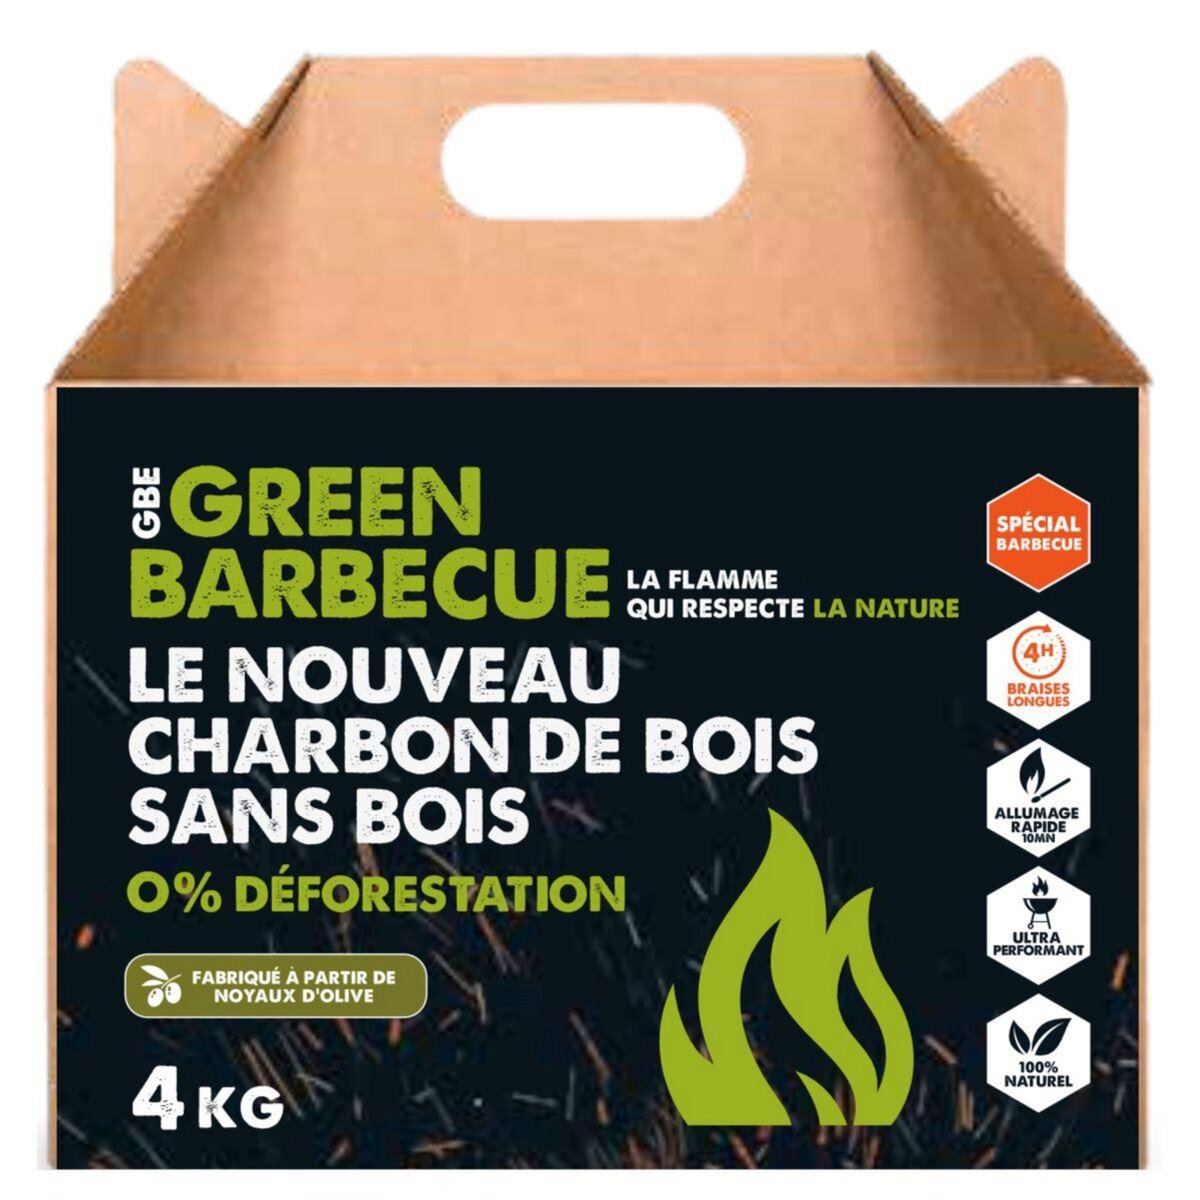 GREENBBQ Charbon de bois écologique noyaux d'olives 4kg